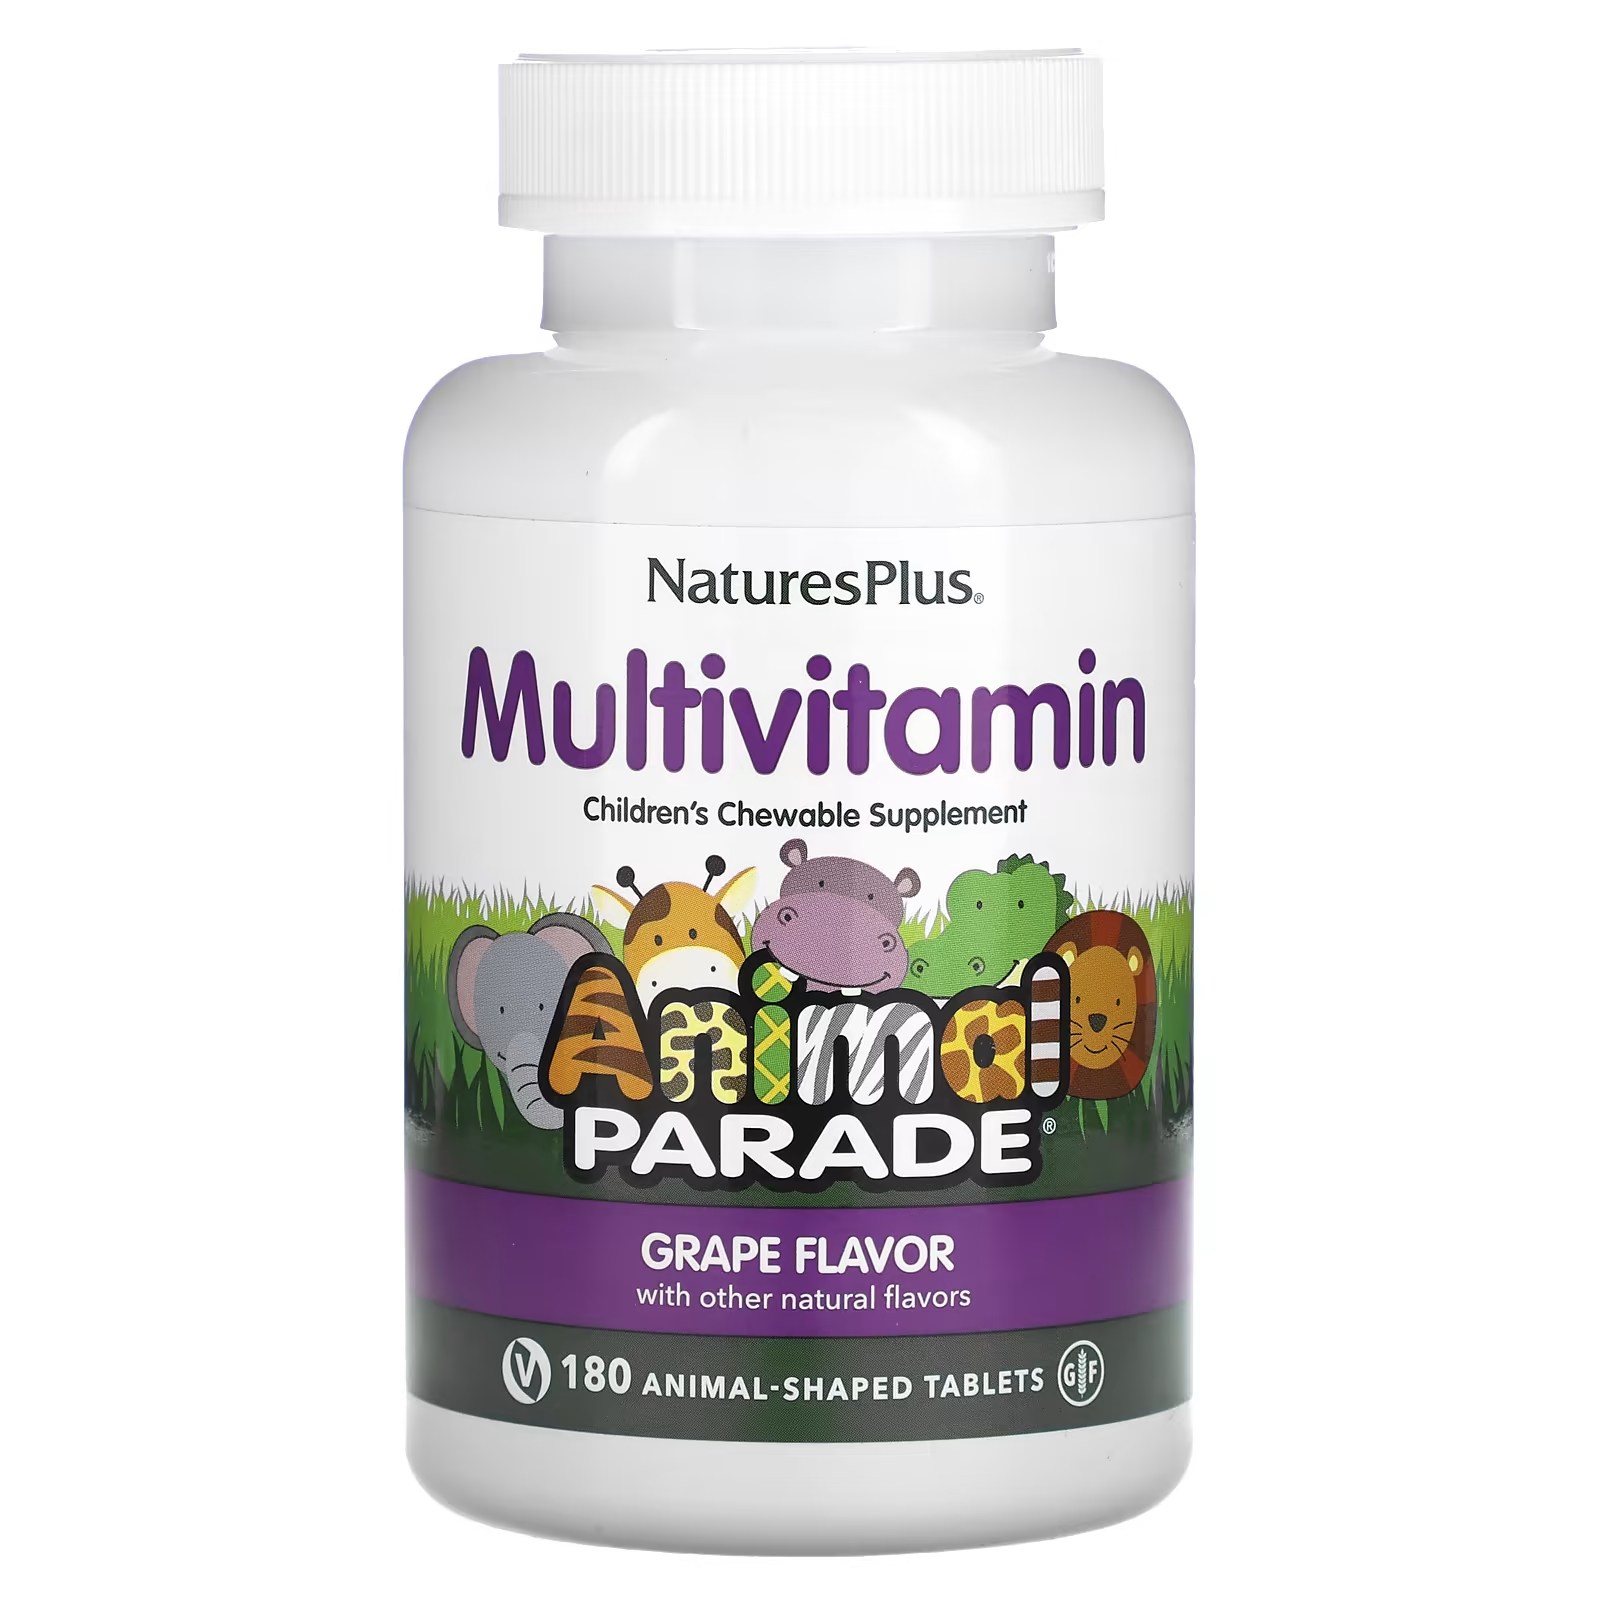 Мультивитаминная добавка NaturesPlus Animal Parade со вкусом винограда, 180 таблеток в форме животных